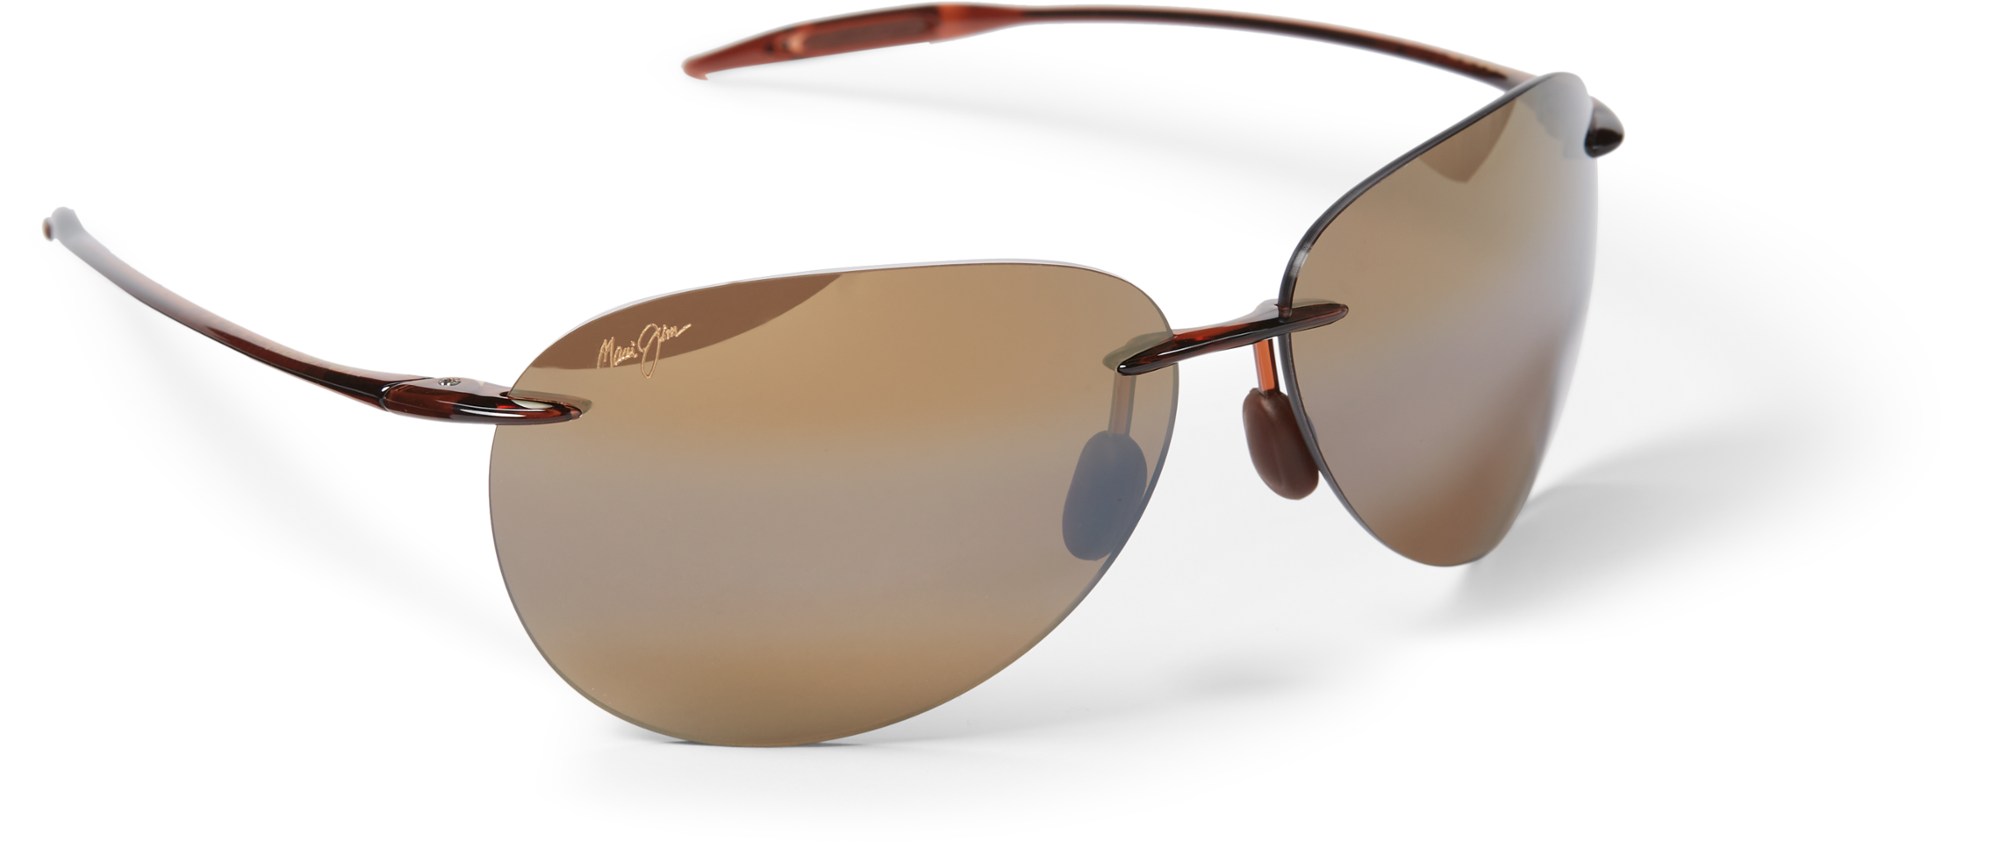 цена Поляризованные солнцезащитные очки Sugar Beach Maui Jim, коричневый